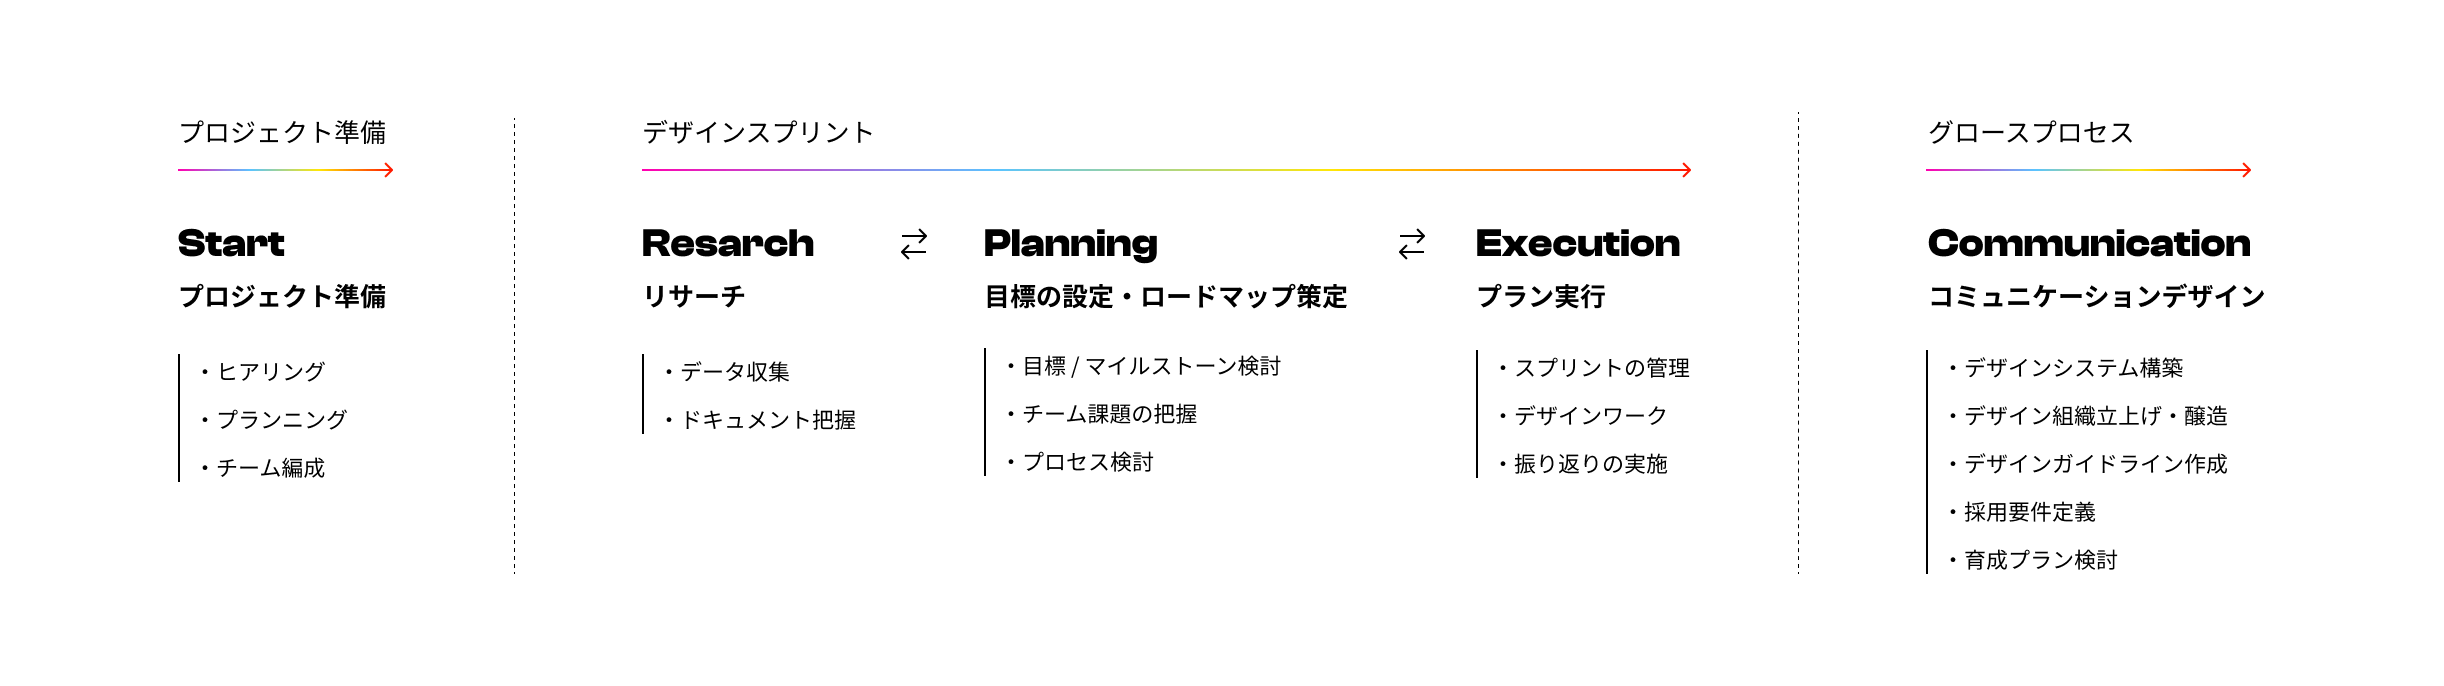 デザインパートナーパターンのプロセス図